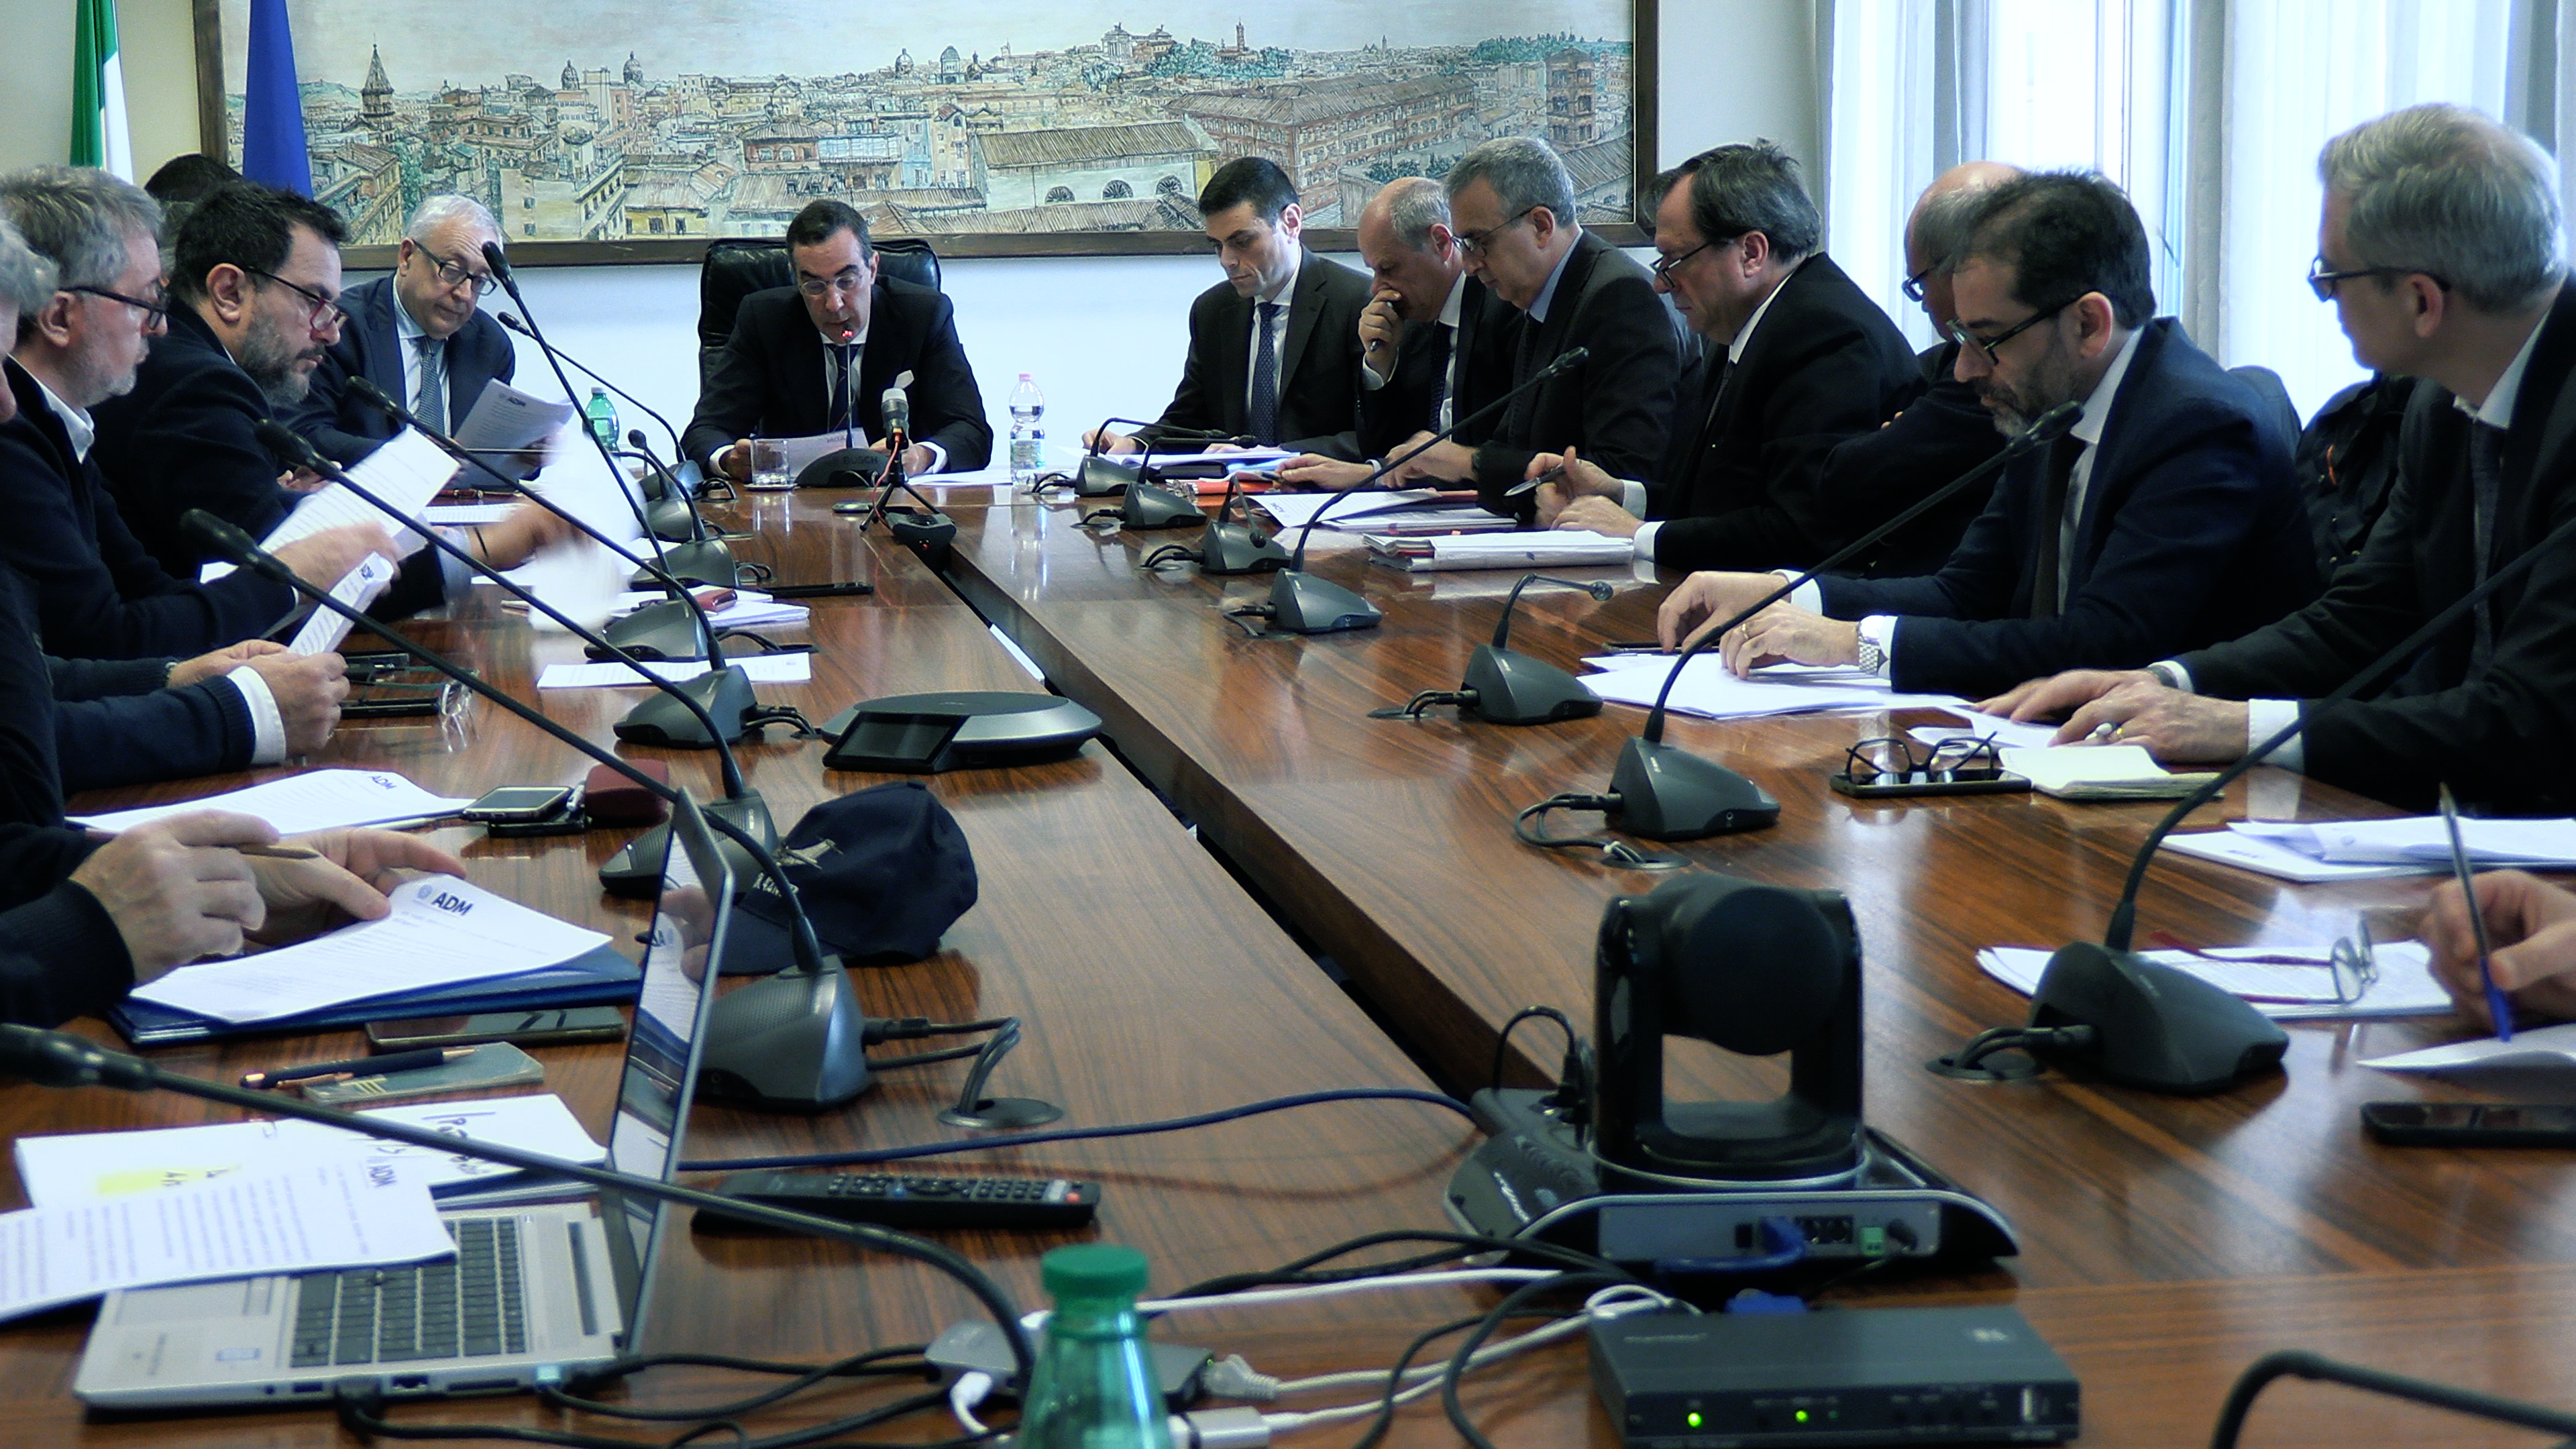 La riunione del Comitato Paritetico dell’Agenzia in cui il Direttore Alesse ha presentato il progetto finale della riorganizzazione territoriale dell’Agenzia